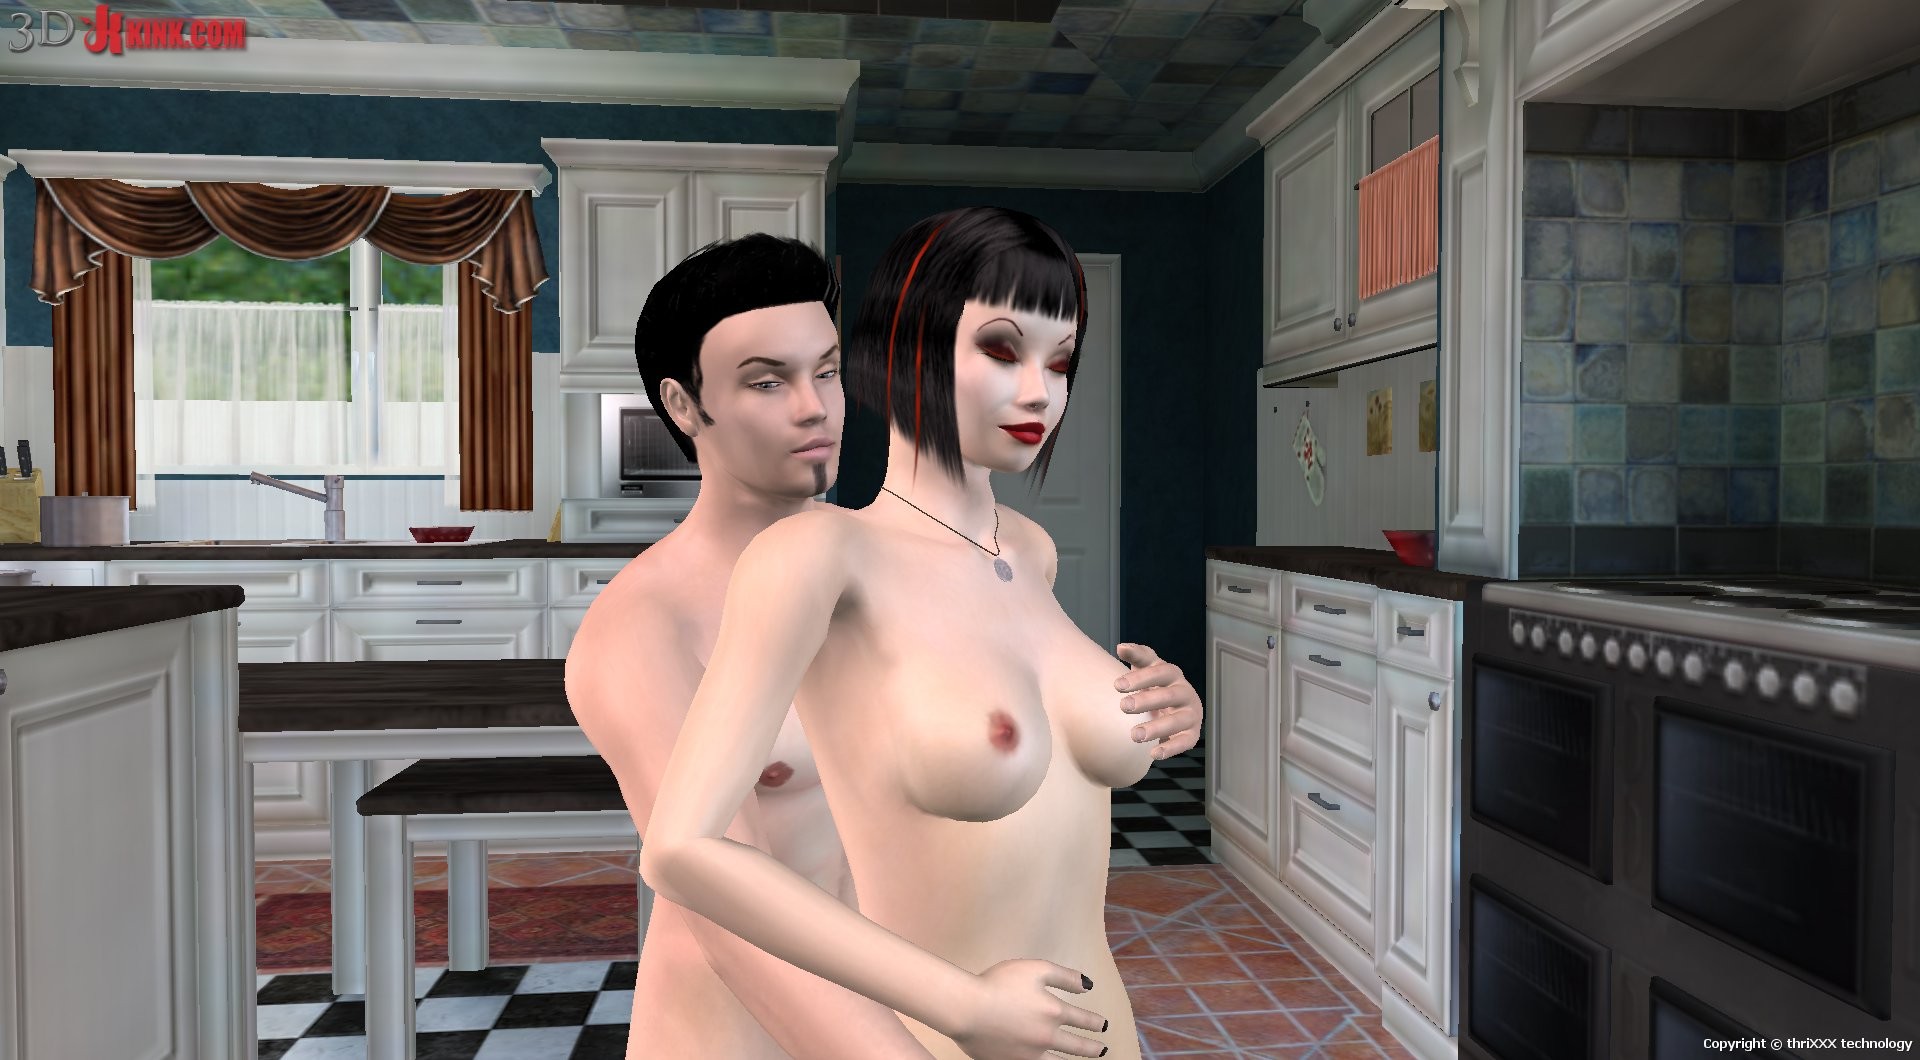 Action sexuelle bdsm chaude créée dans un jeu sexuel 3d fétichiste virtuel !
 #69572652